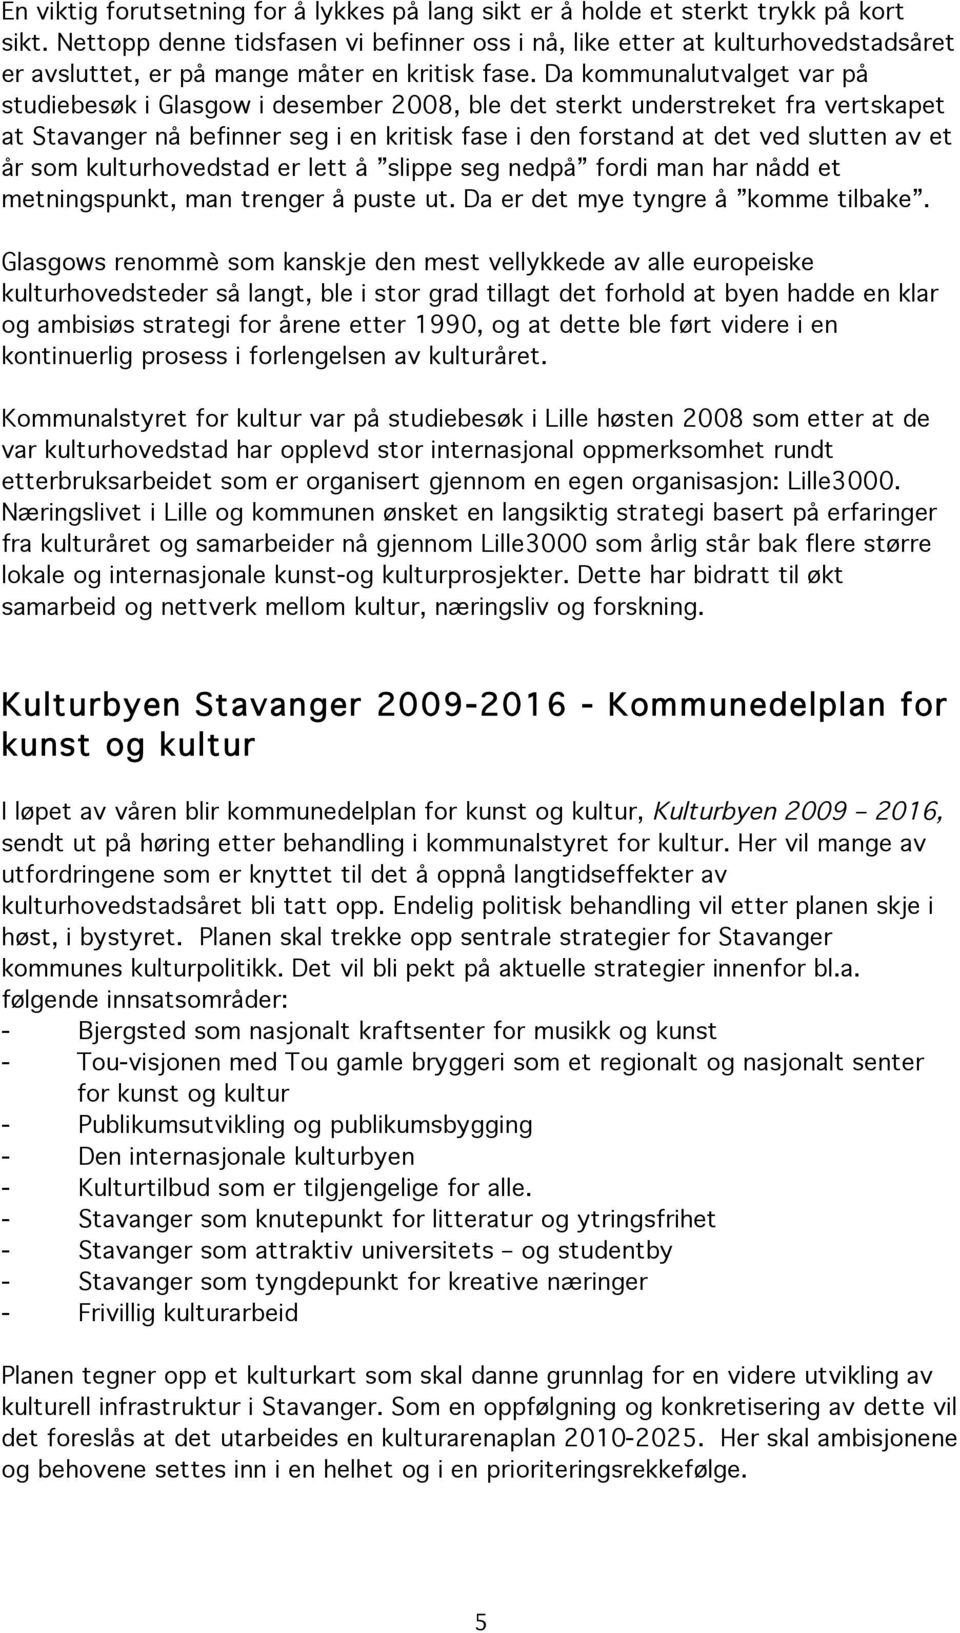 Da kommunalutvalget var på studiebesøk i Glasgow i desember 2008, ble det sterkt understreket fra vertskapet at Stavanger nå befinner seg i en kritisk fase i den forstand at det ved slutten av et år